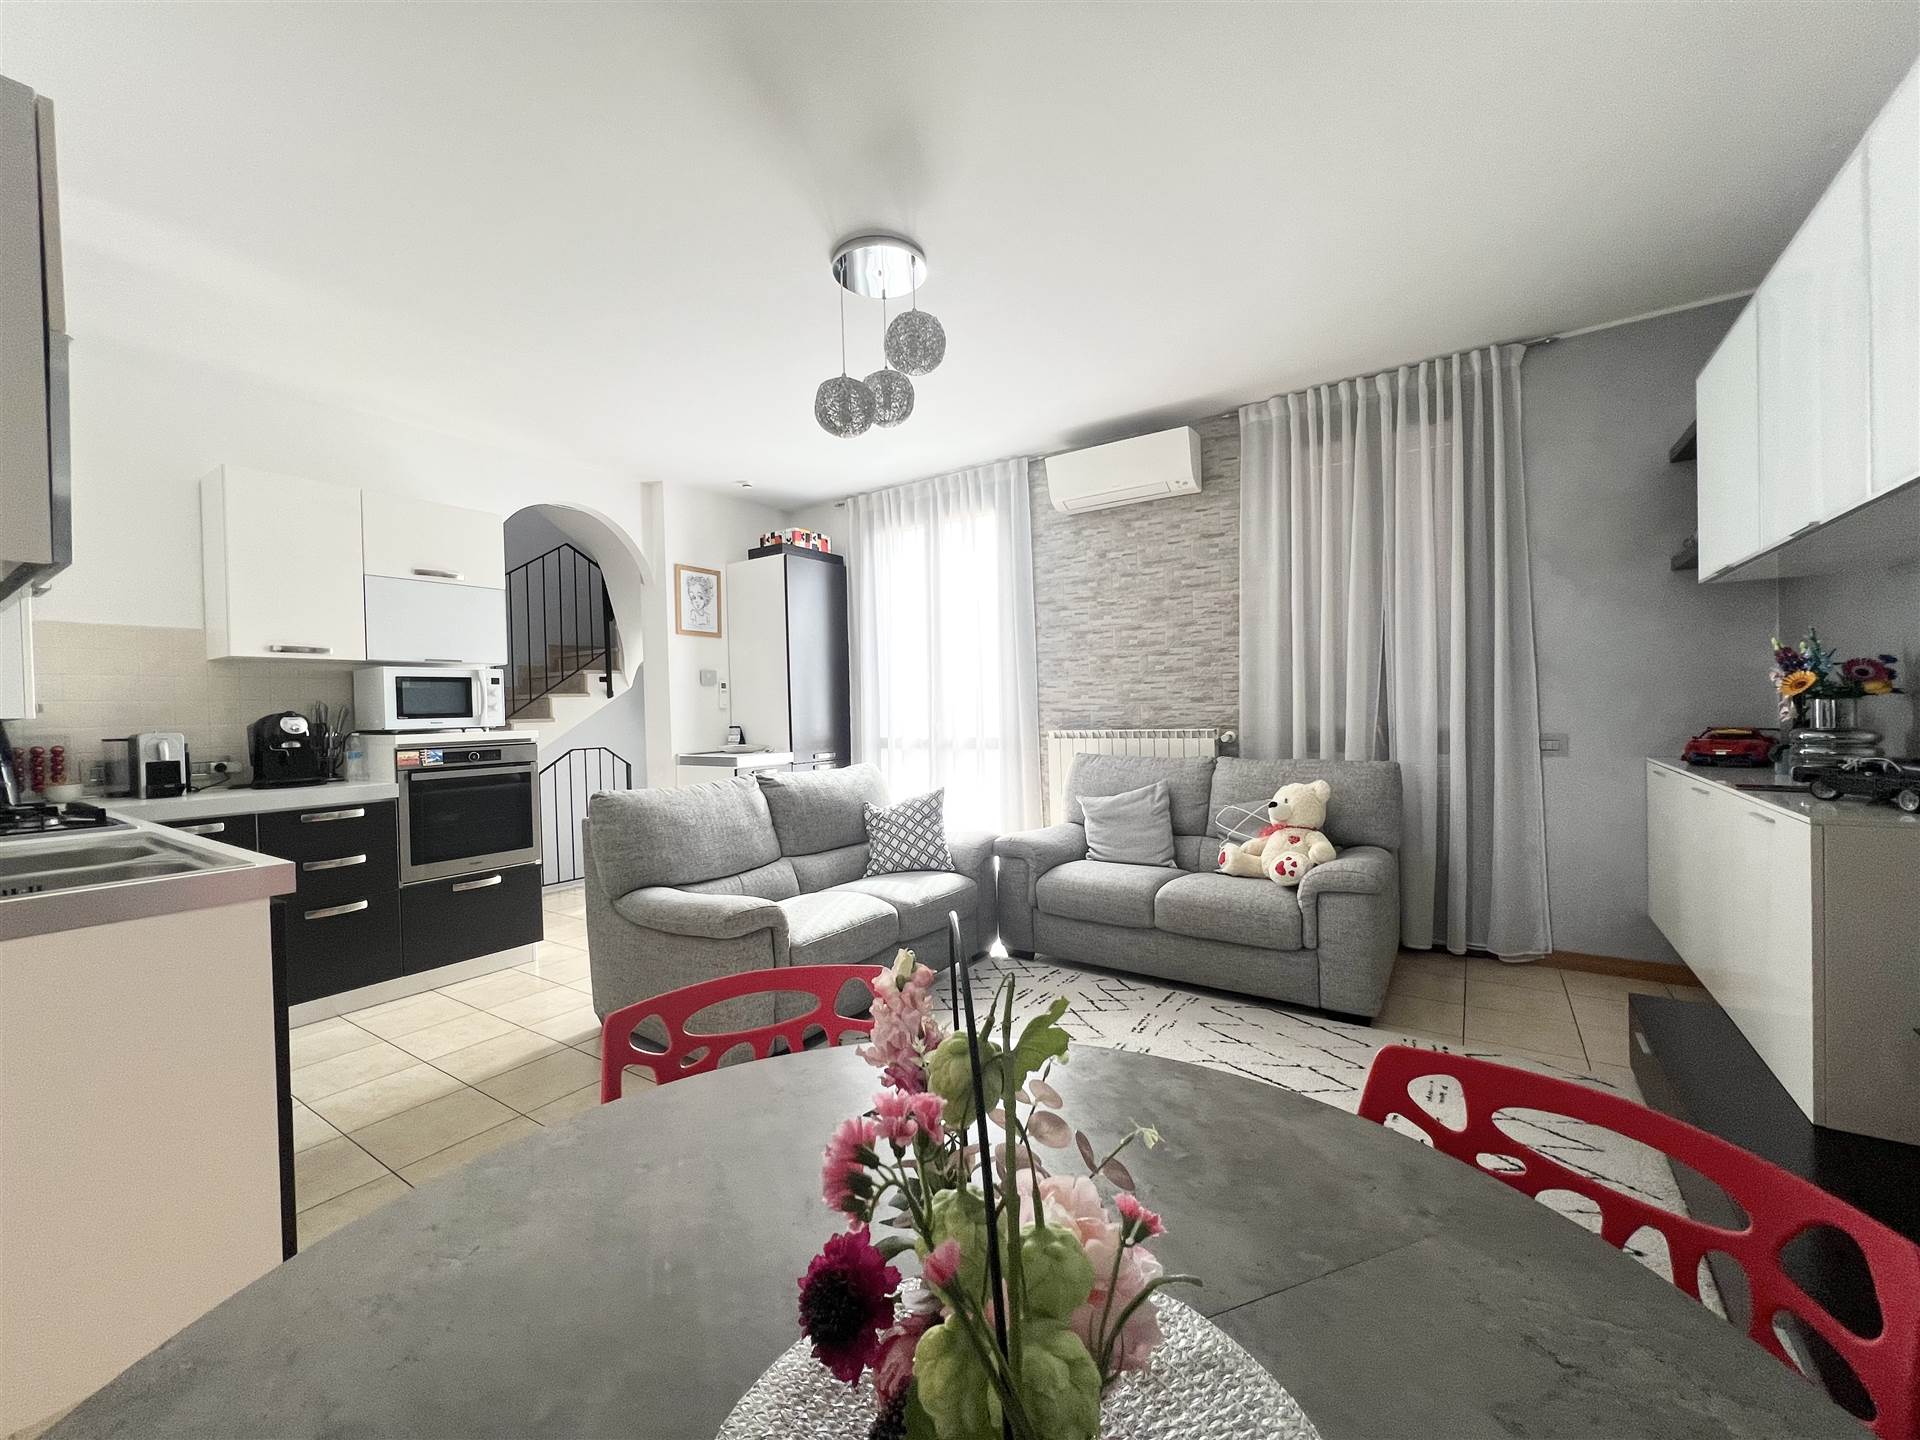 Appartamento in vendita a Ghisalba, 4 locali, prezzo € 190.000 | PortaleAgenzieImmobiliari.it